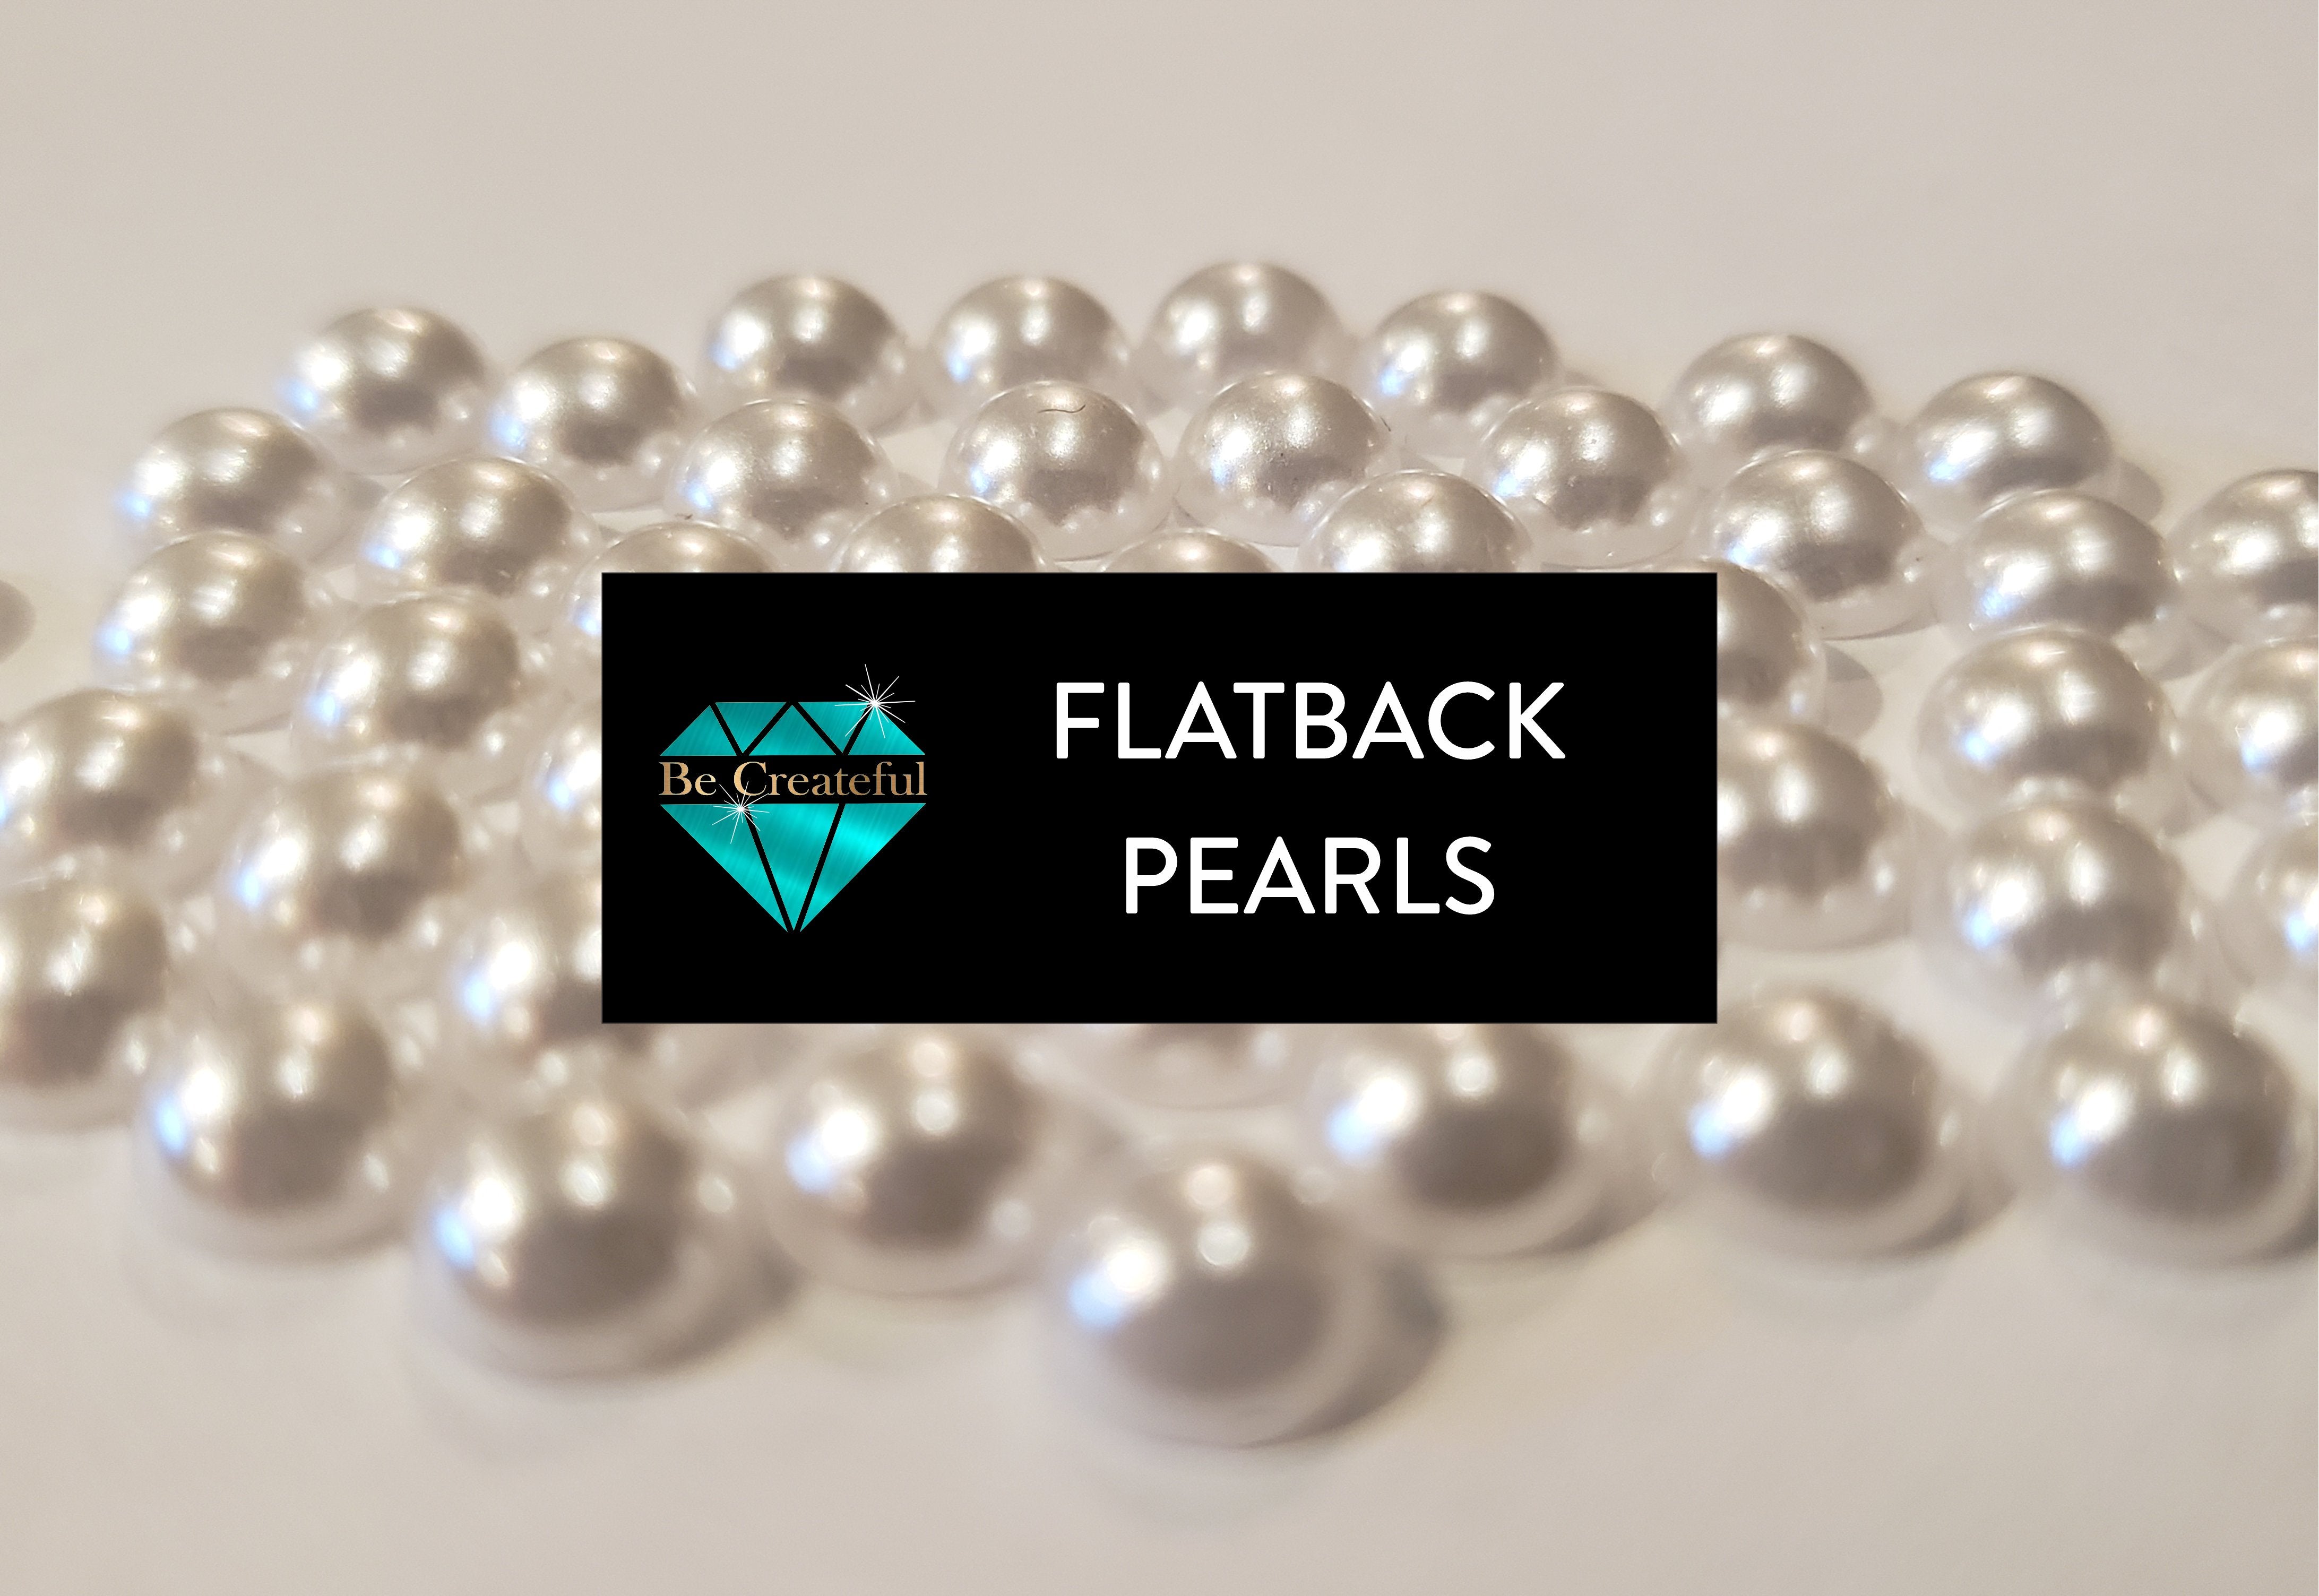 Belleboost Flat Back Pearls Kits 1 Box of Flatback Black Half